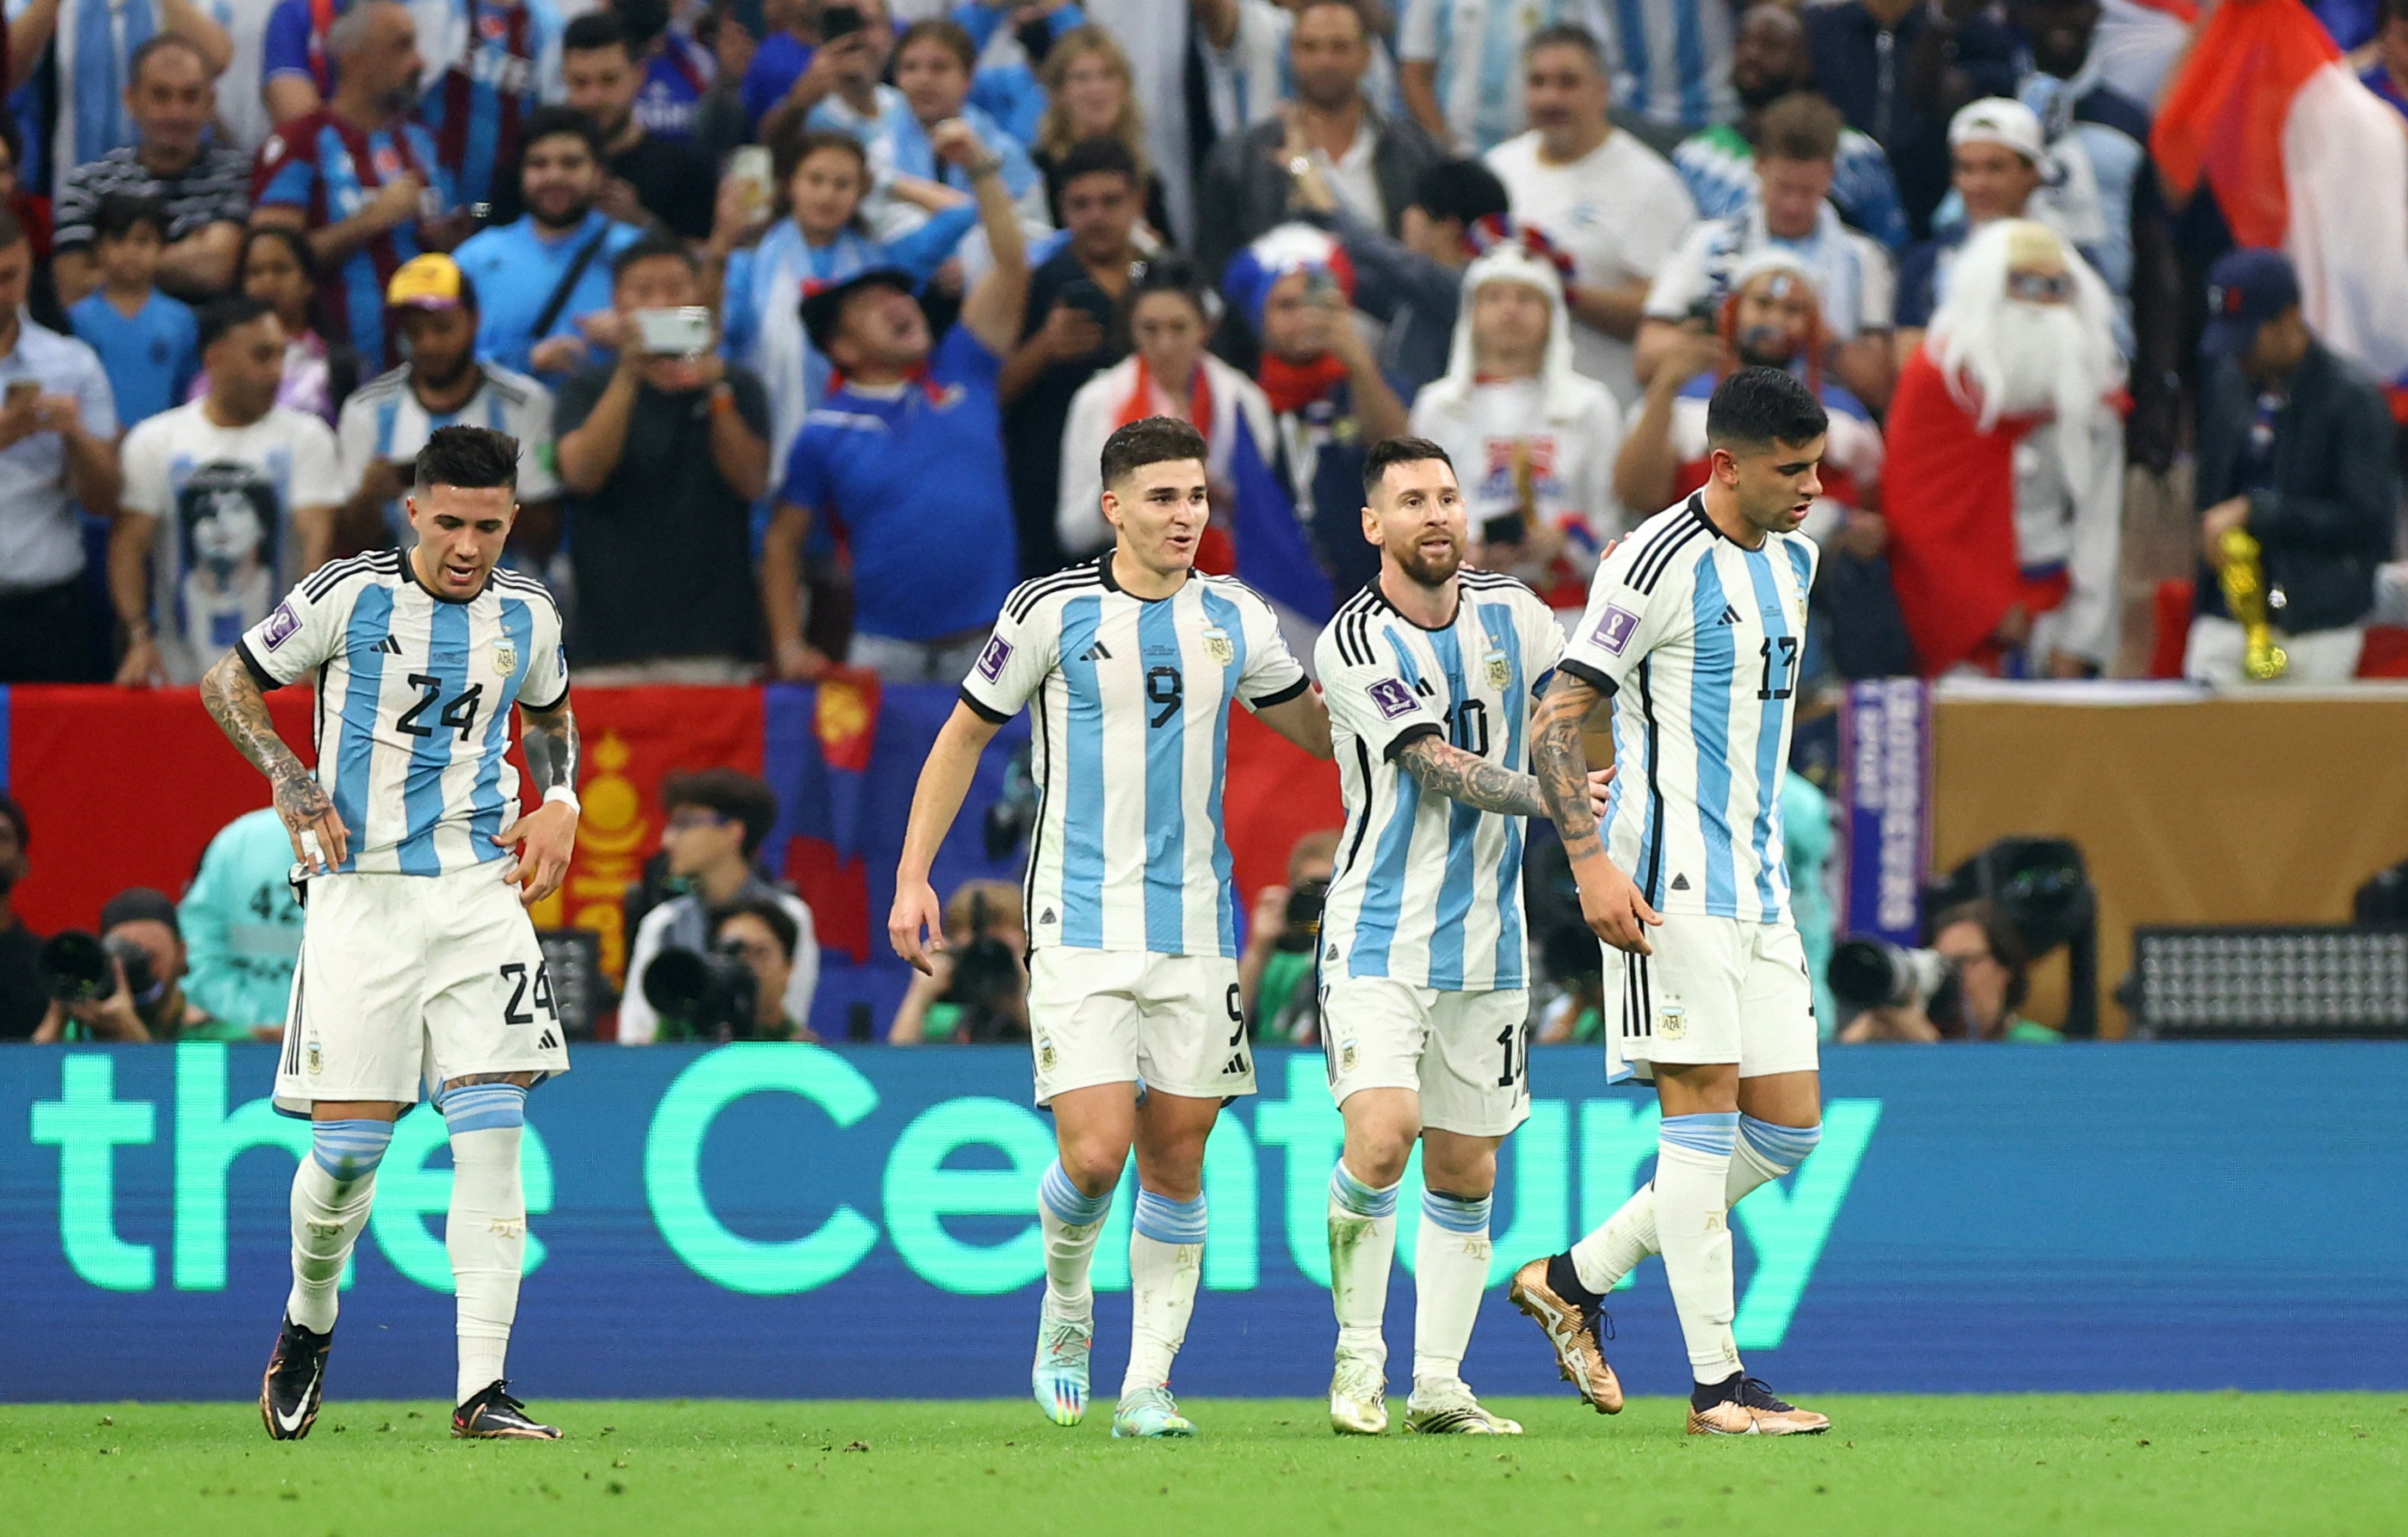 La selección argentina campeona del mundo tendrá dos amistosos en el país para celebrar el título mundial (REUTERS/Hannah Mckay)